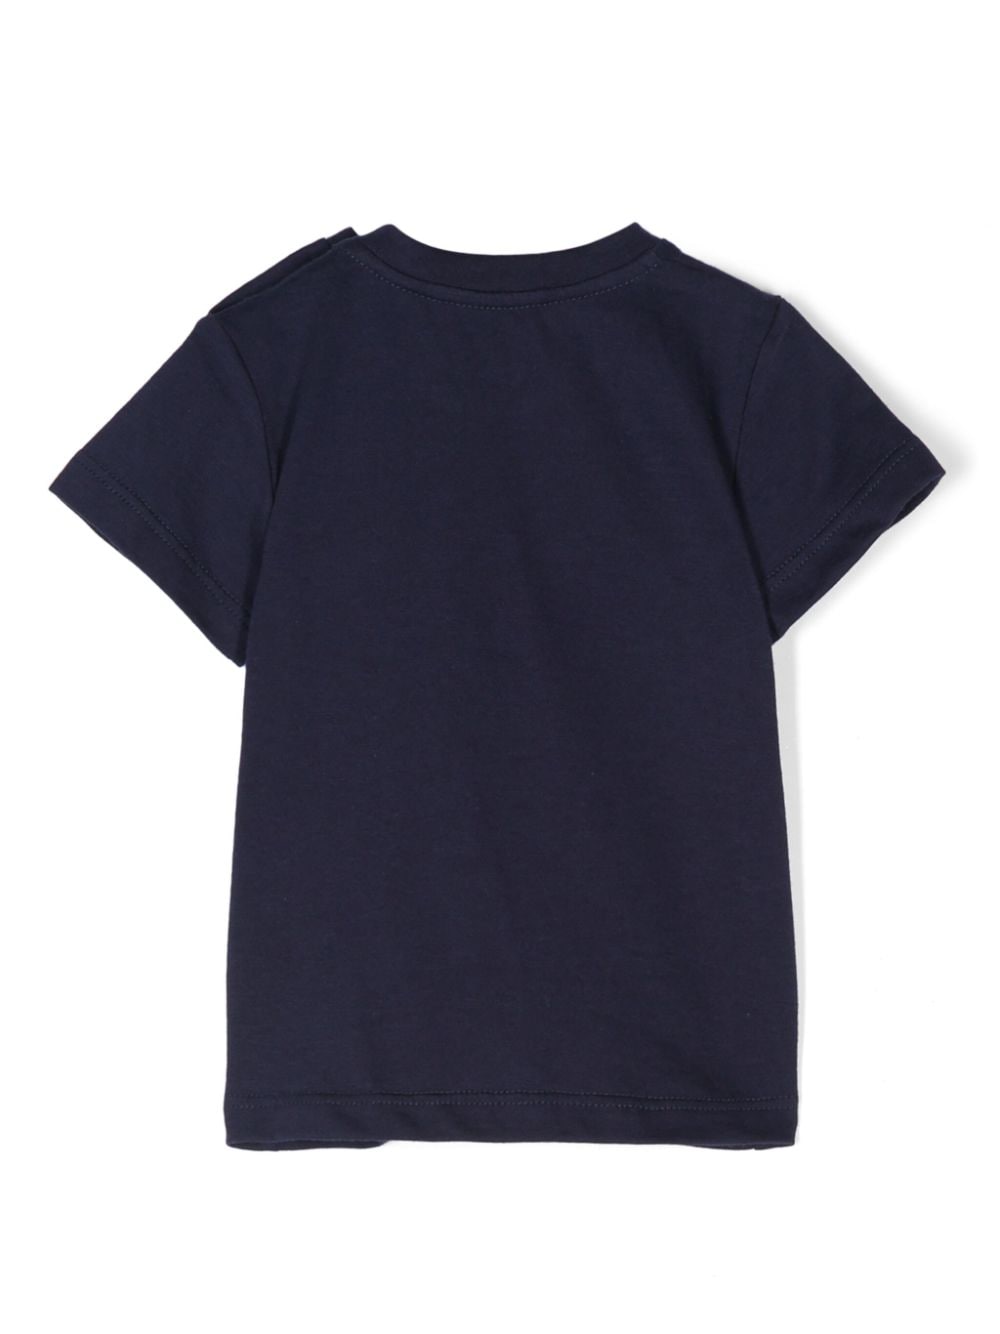 T-shirt blu navy neonato